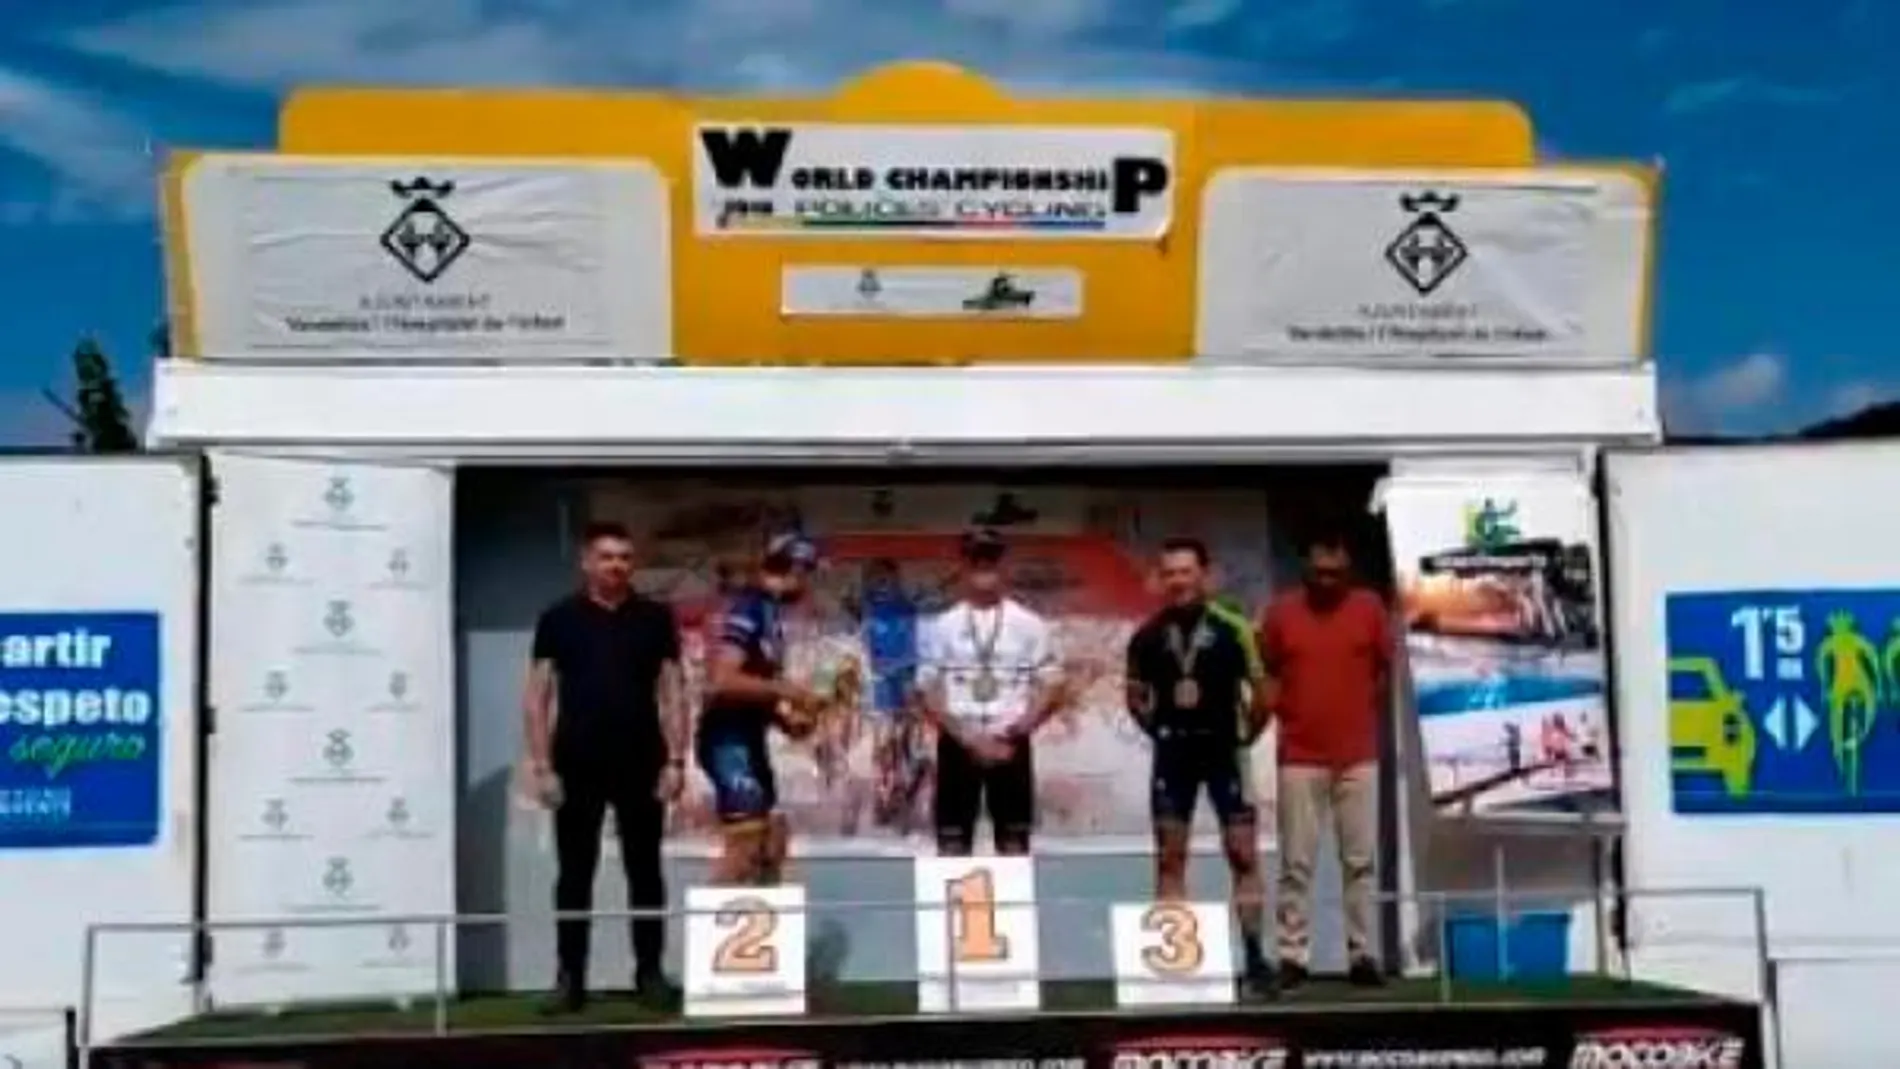 Captura del momento en que el mosso abandona el segundo puesto del podio del Campeonato del Mundo de Ciclismo para Policías / Twitter